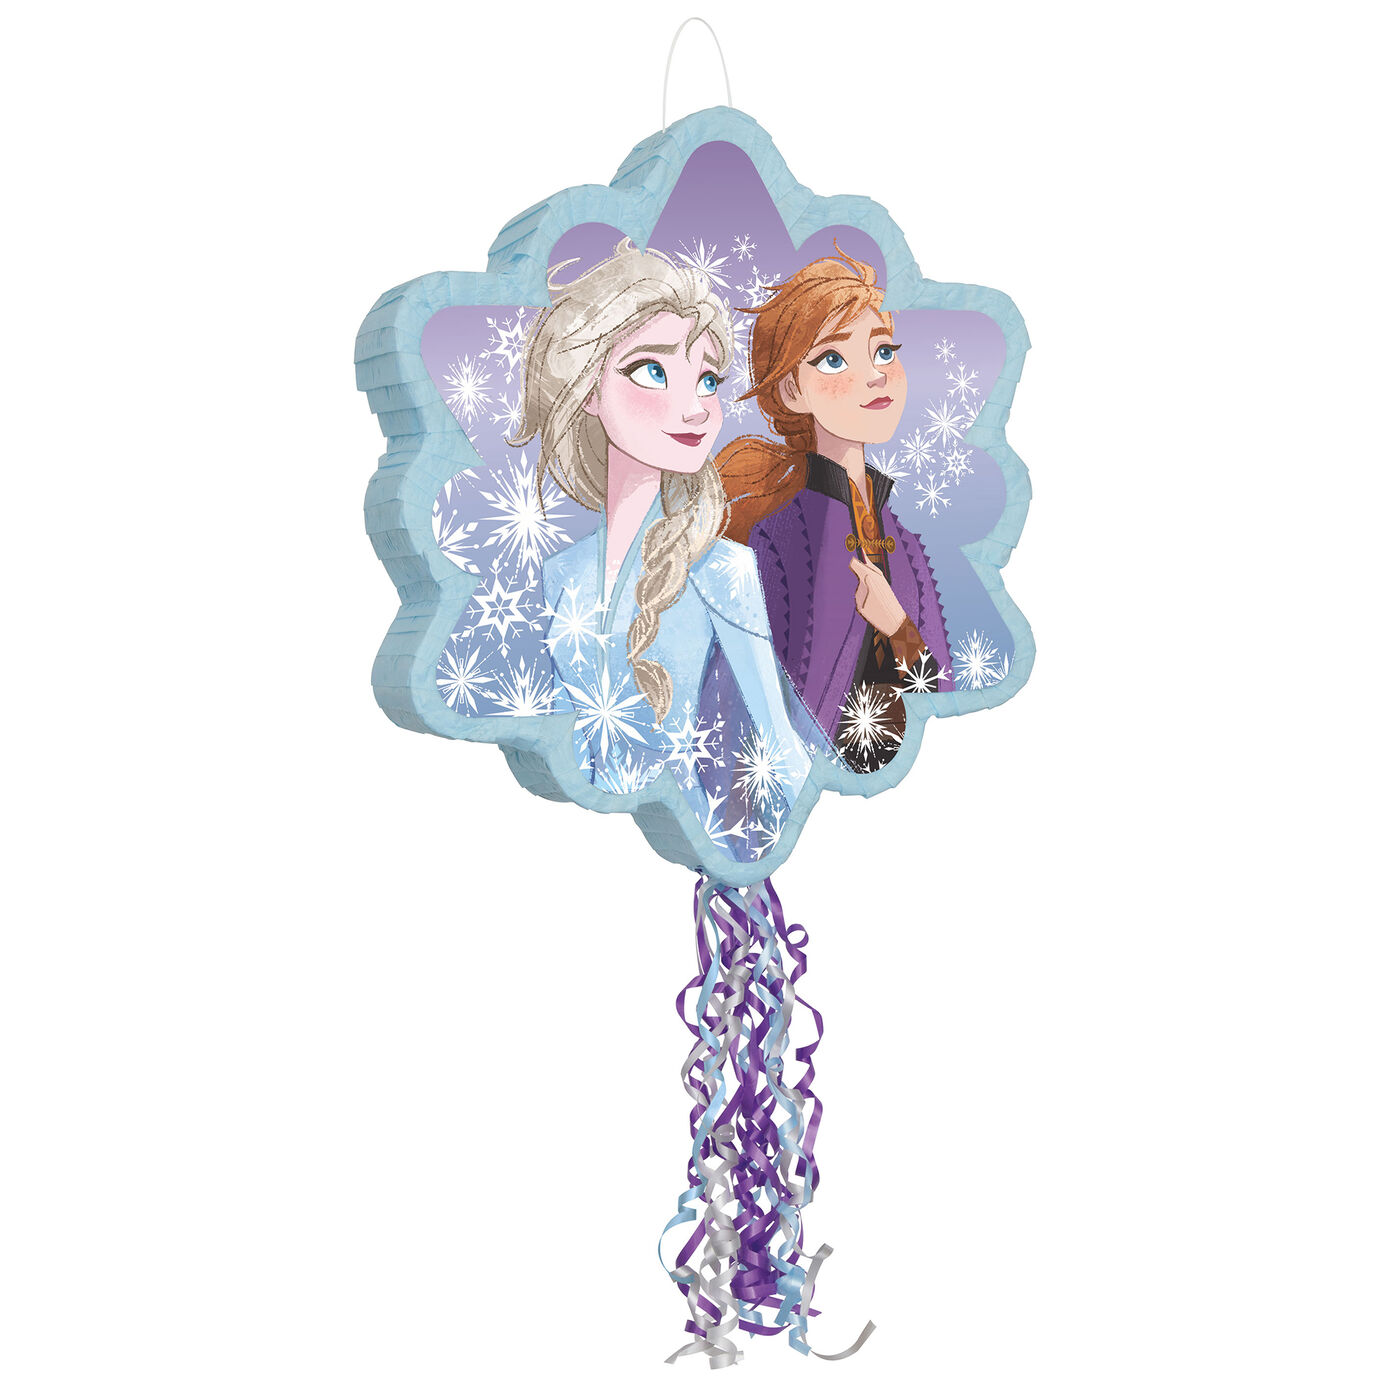 Piñata Elsa Frozen Kids Party Game Birthday